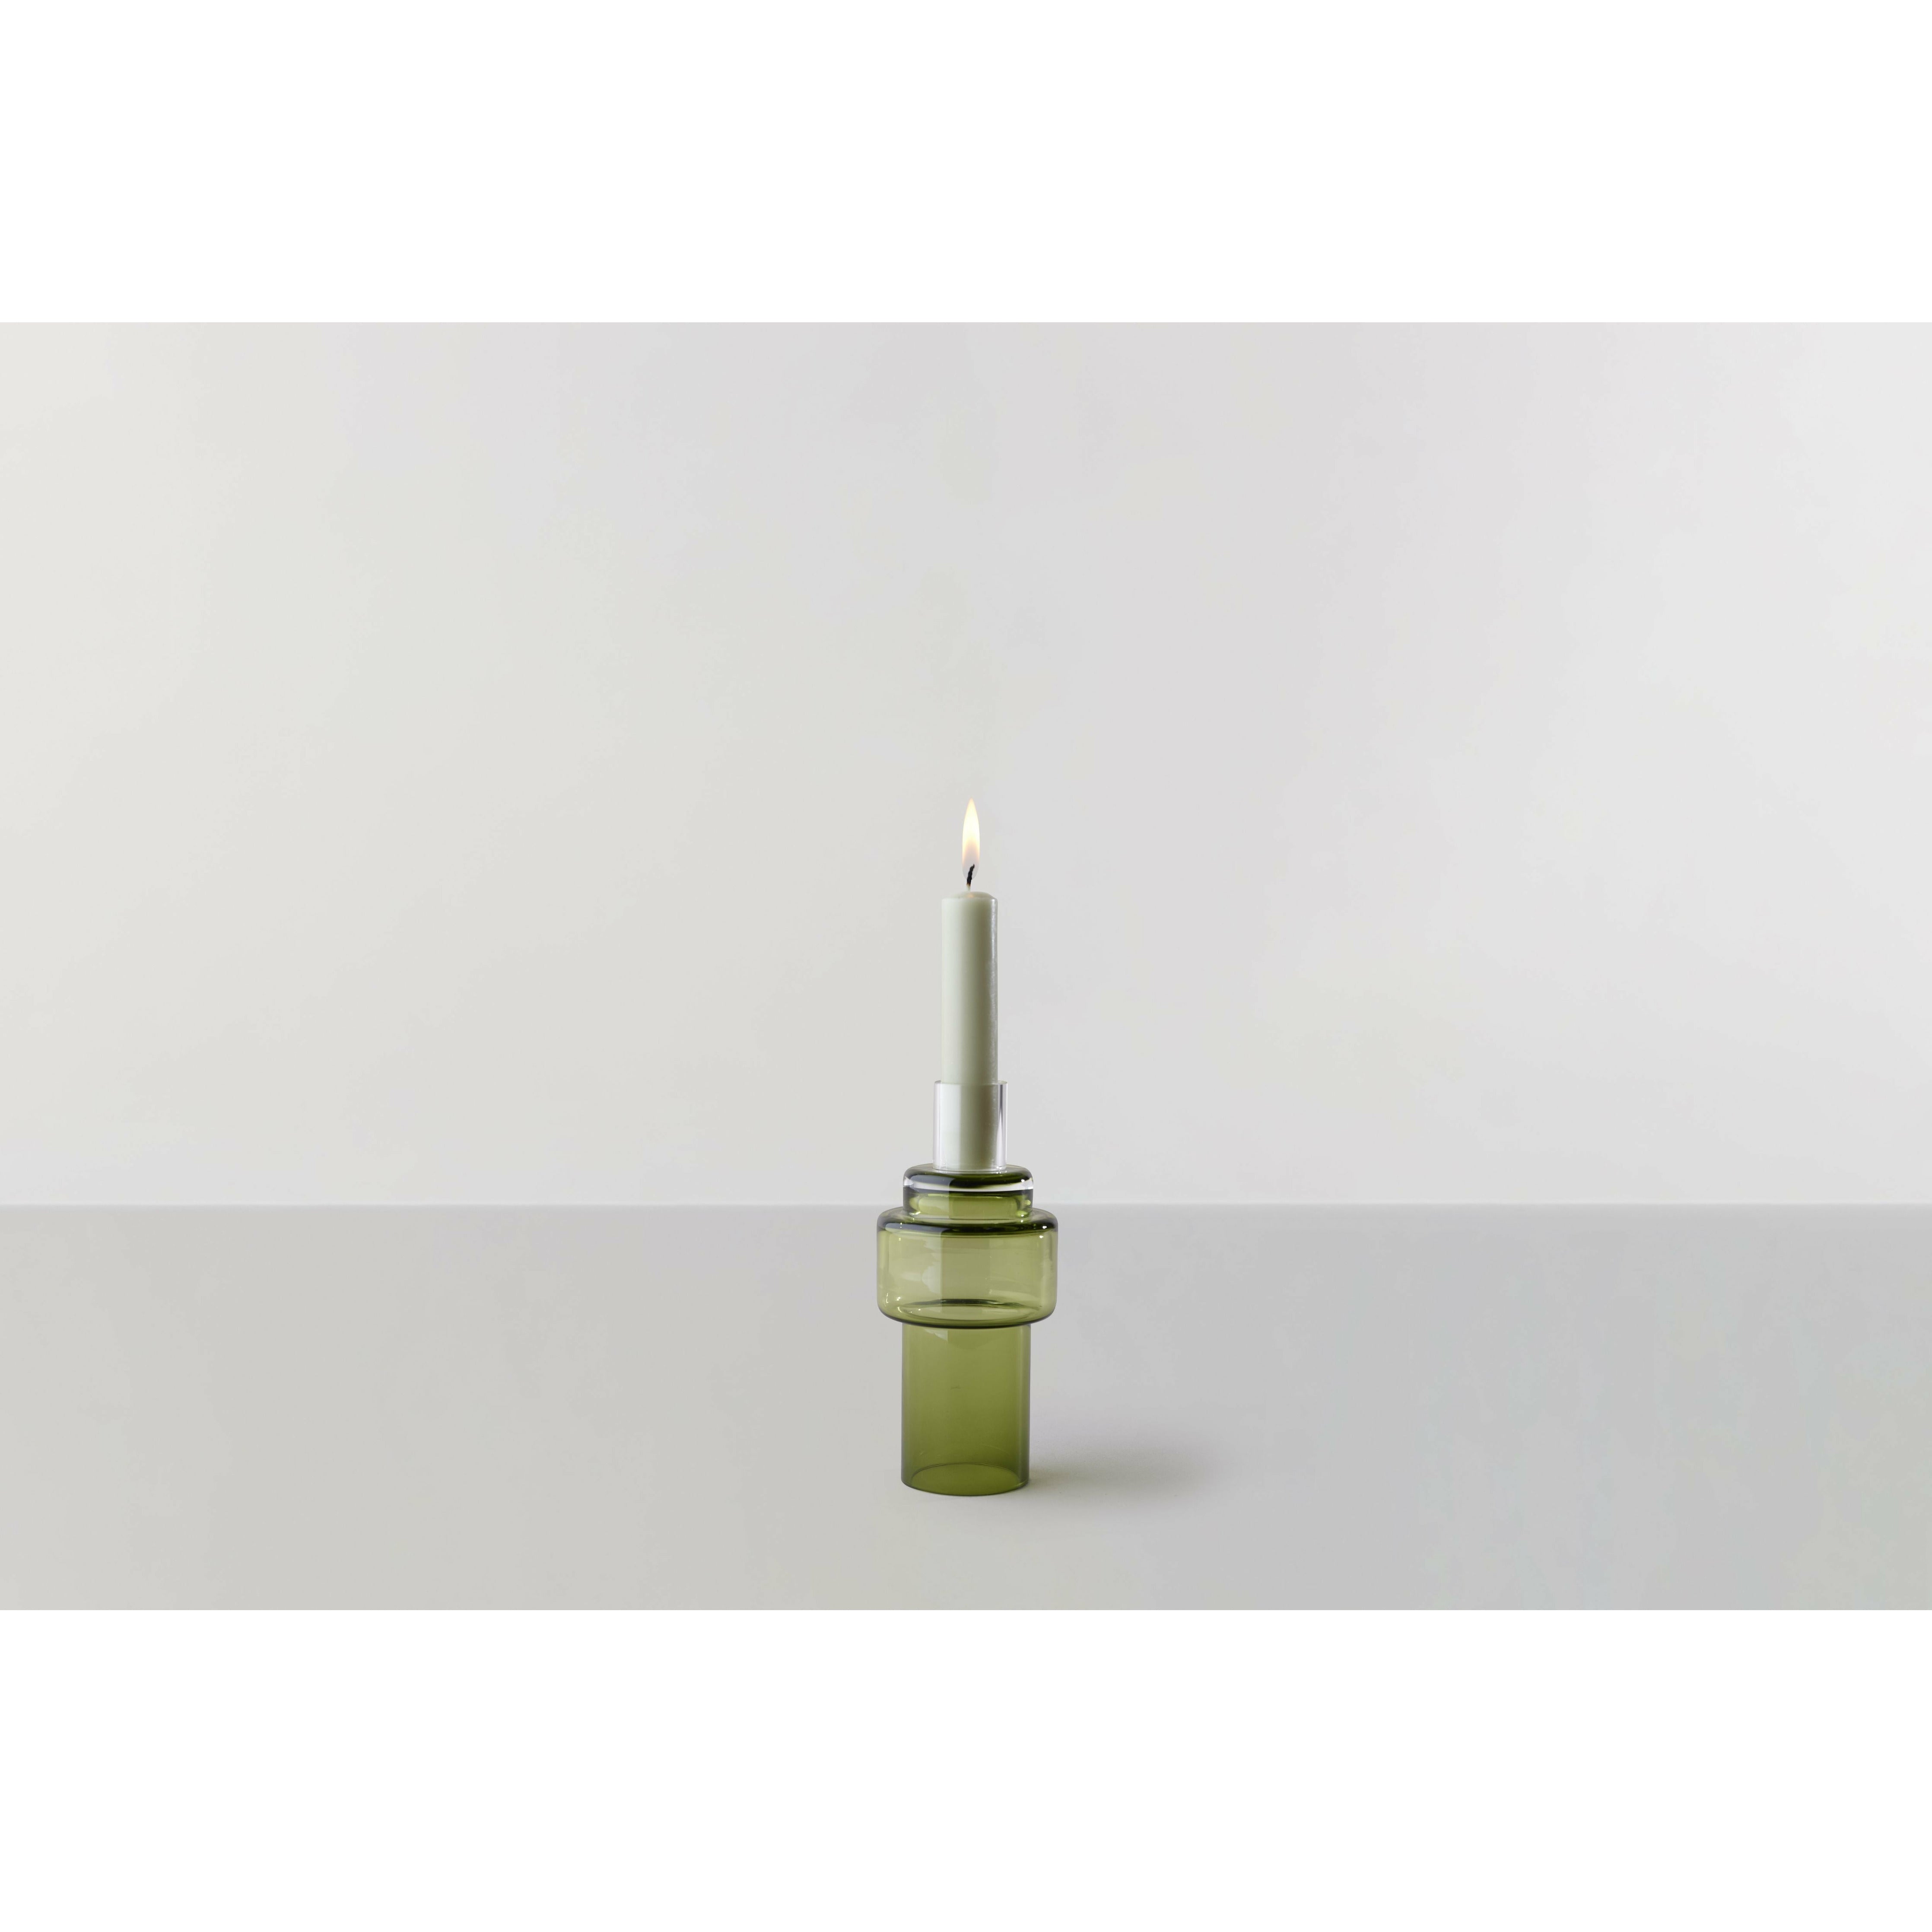 RO -Sammlung Nr. 55 Glass Candlestick, Moss Green